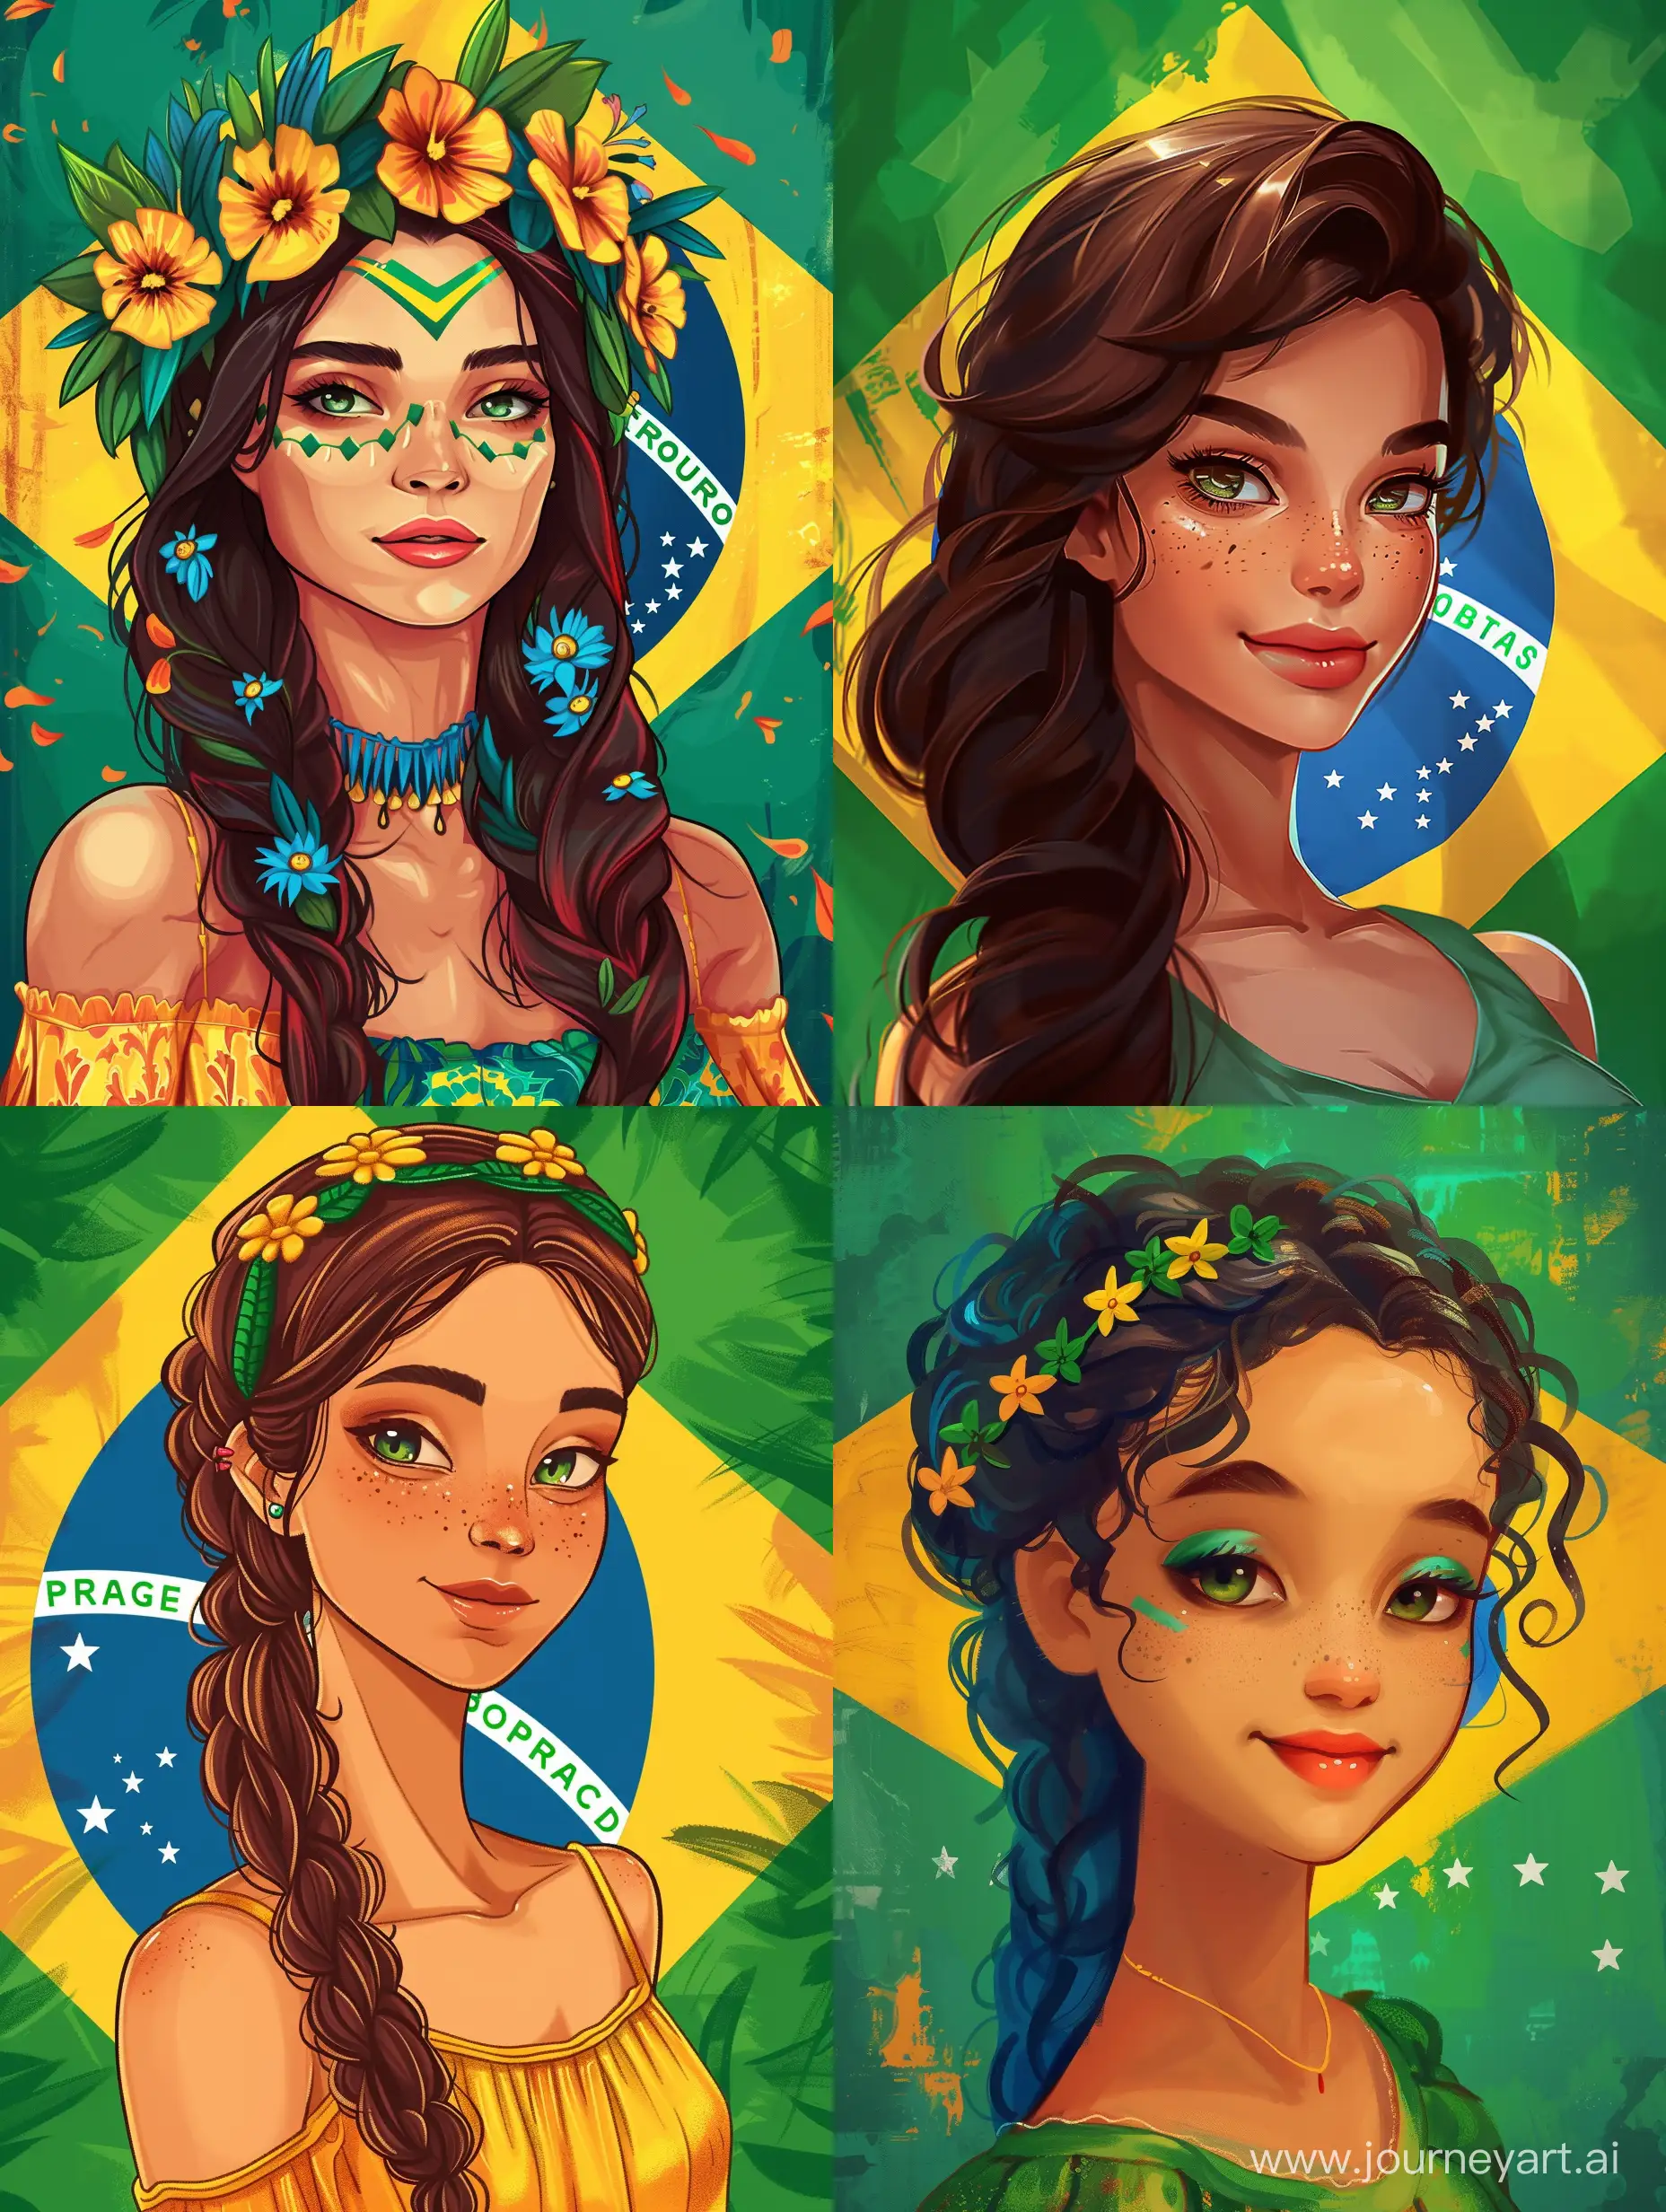 اگه کشور برزیل یک دختر بود، چه شکلی میشد؟ یک دختر زیبای برزیلی خلق کن.پس زمینه هم پرچم برزیل باشد